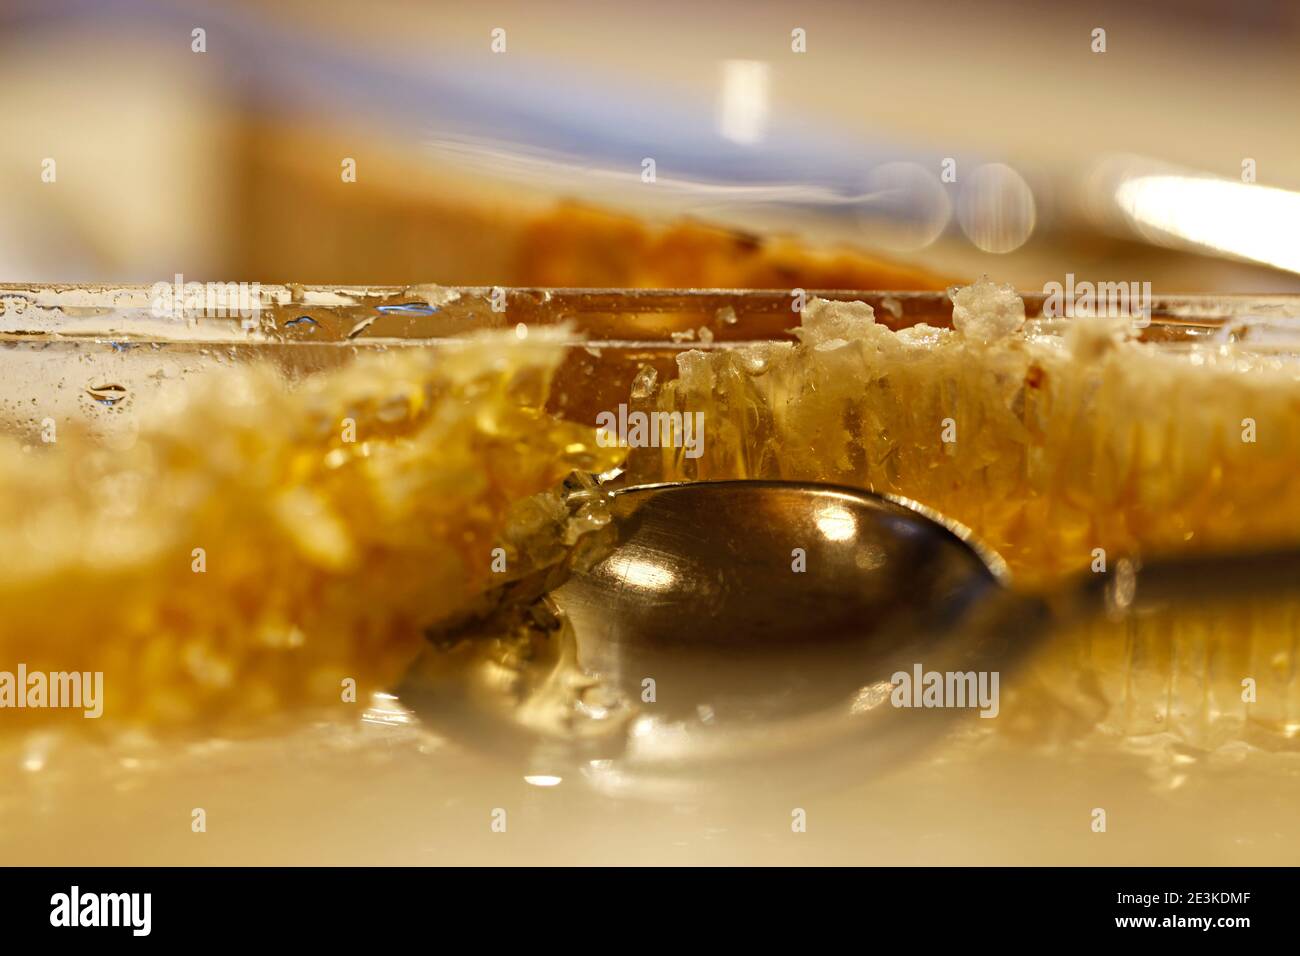 Primo piano del cucchiaio in nido d'ape, tagliare miele a pettine. Un cucchiaio di miele. Foto Stock